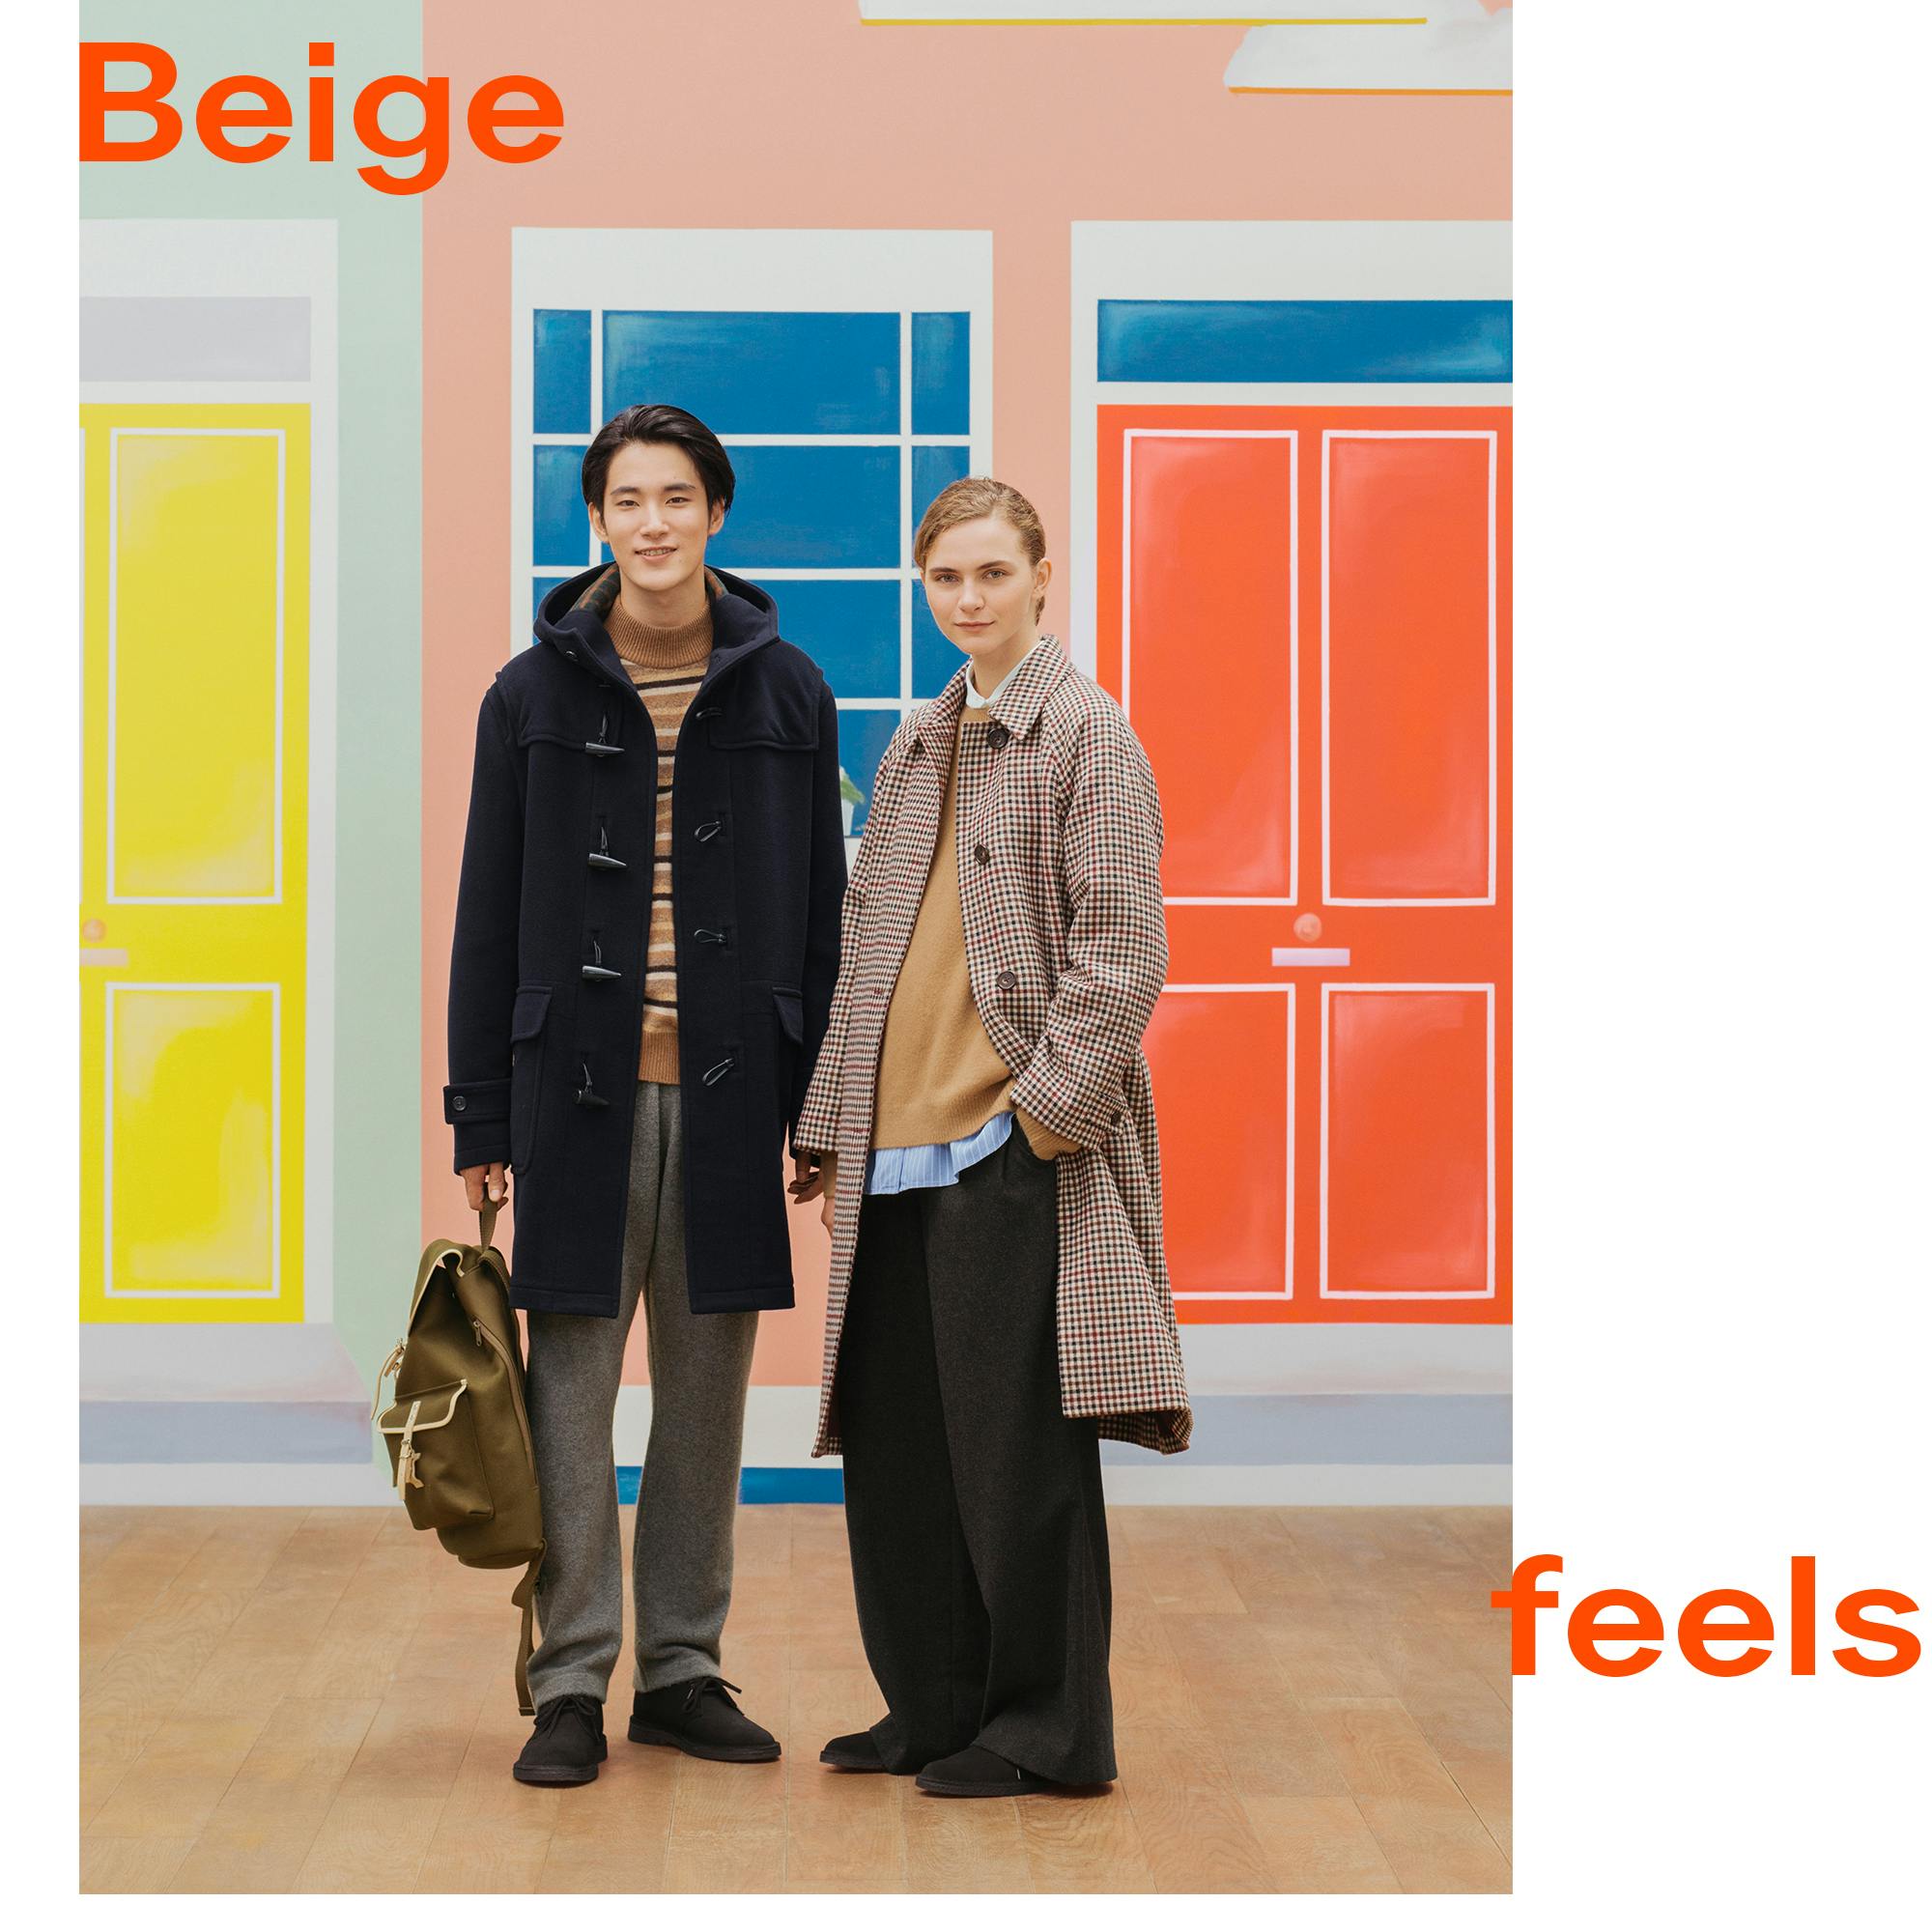 Beige feels: Willkommen und hereinspaziert